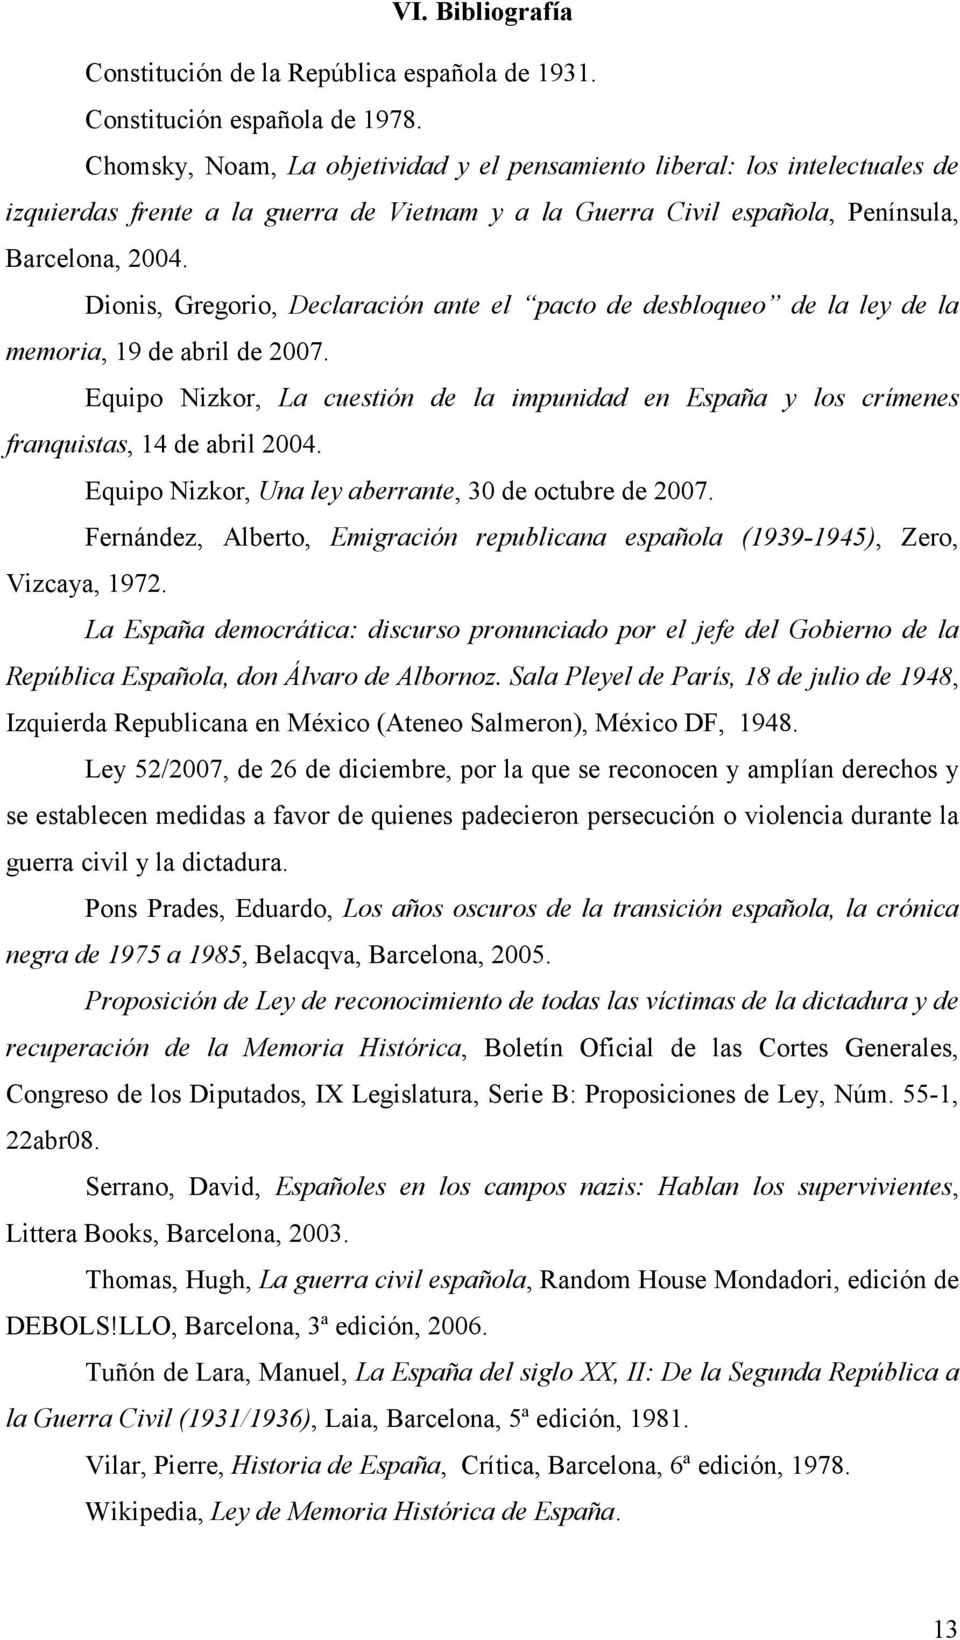 Dionis, Gregorio, Declaración ante el pacto de desbloqueo de la ley de la memoria, 19 de abril de 2007.